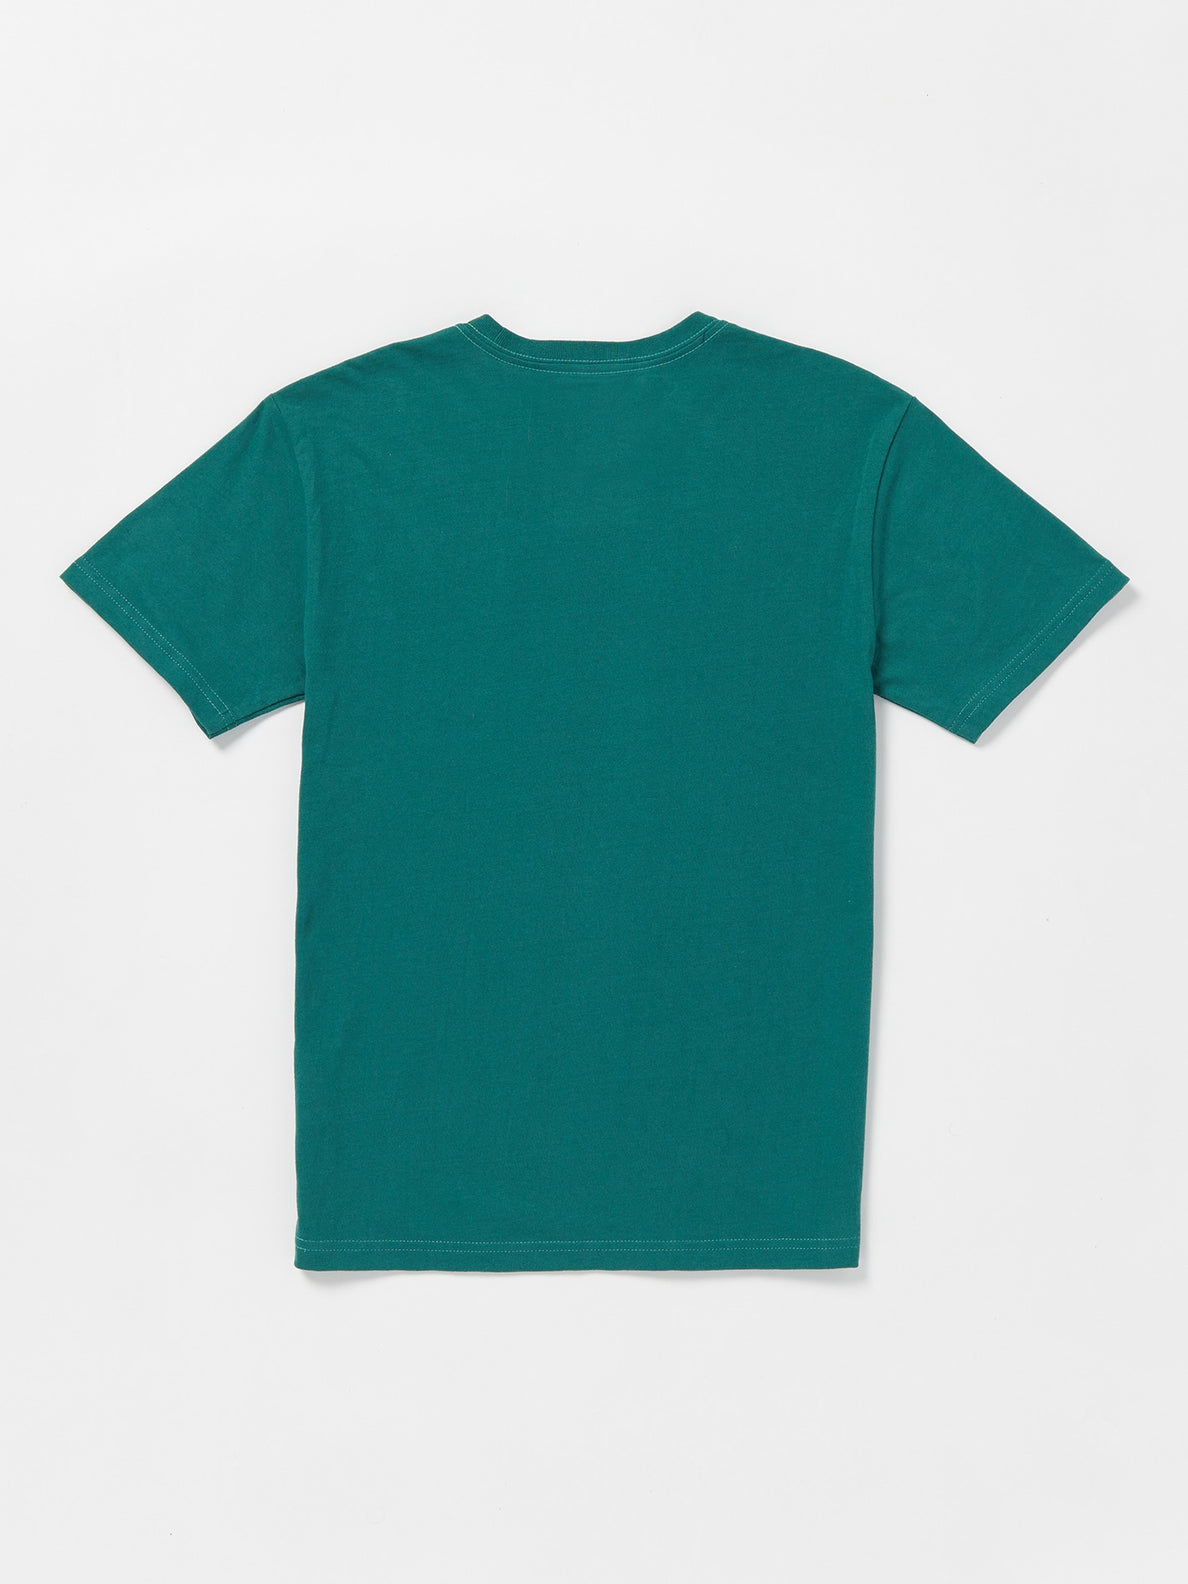 Boys Youth Spinz Short Sleeve T-Shirt - Ranger Green